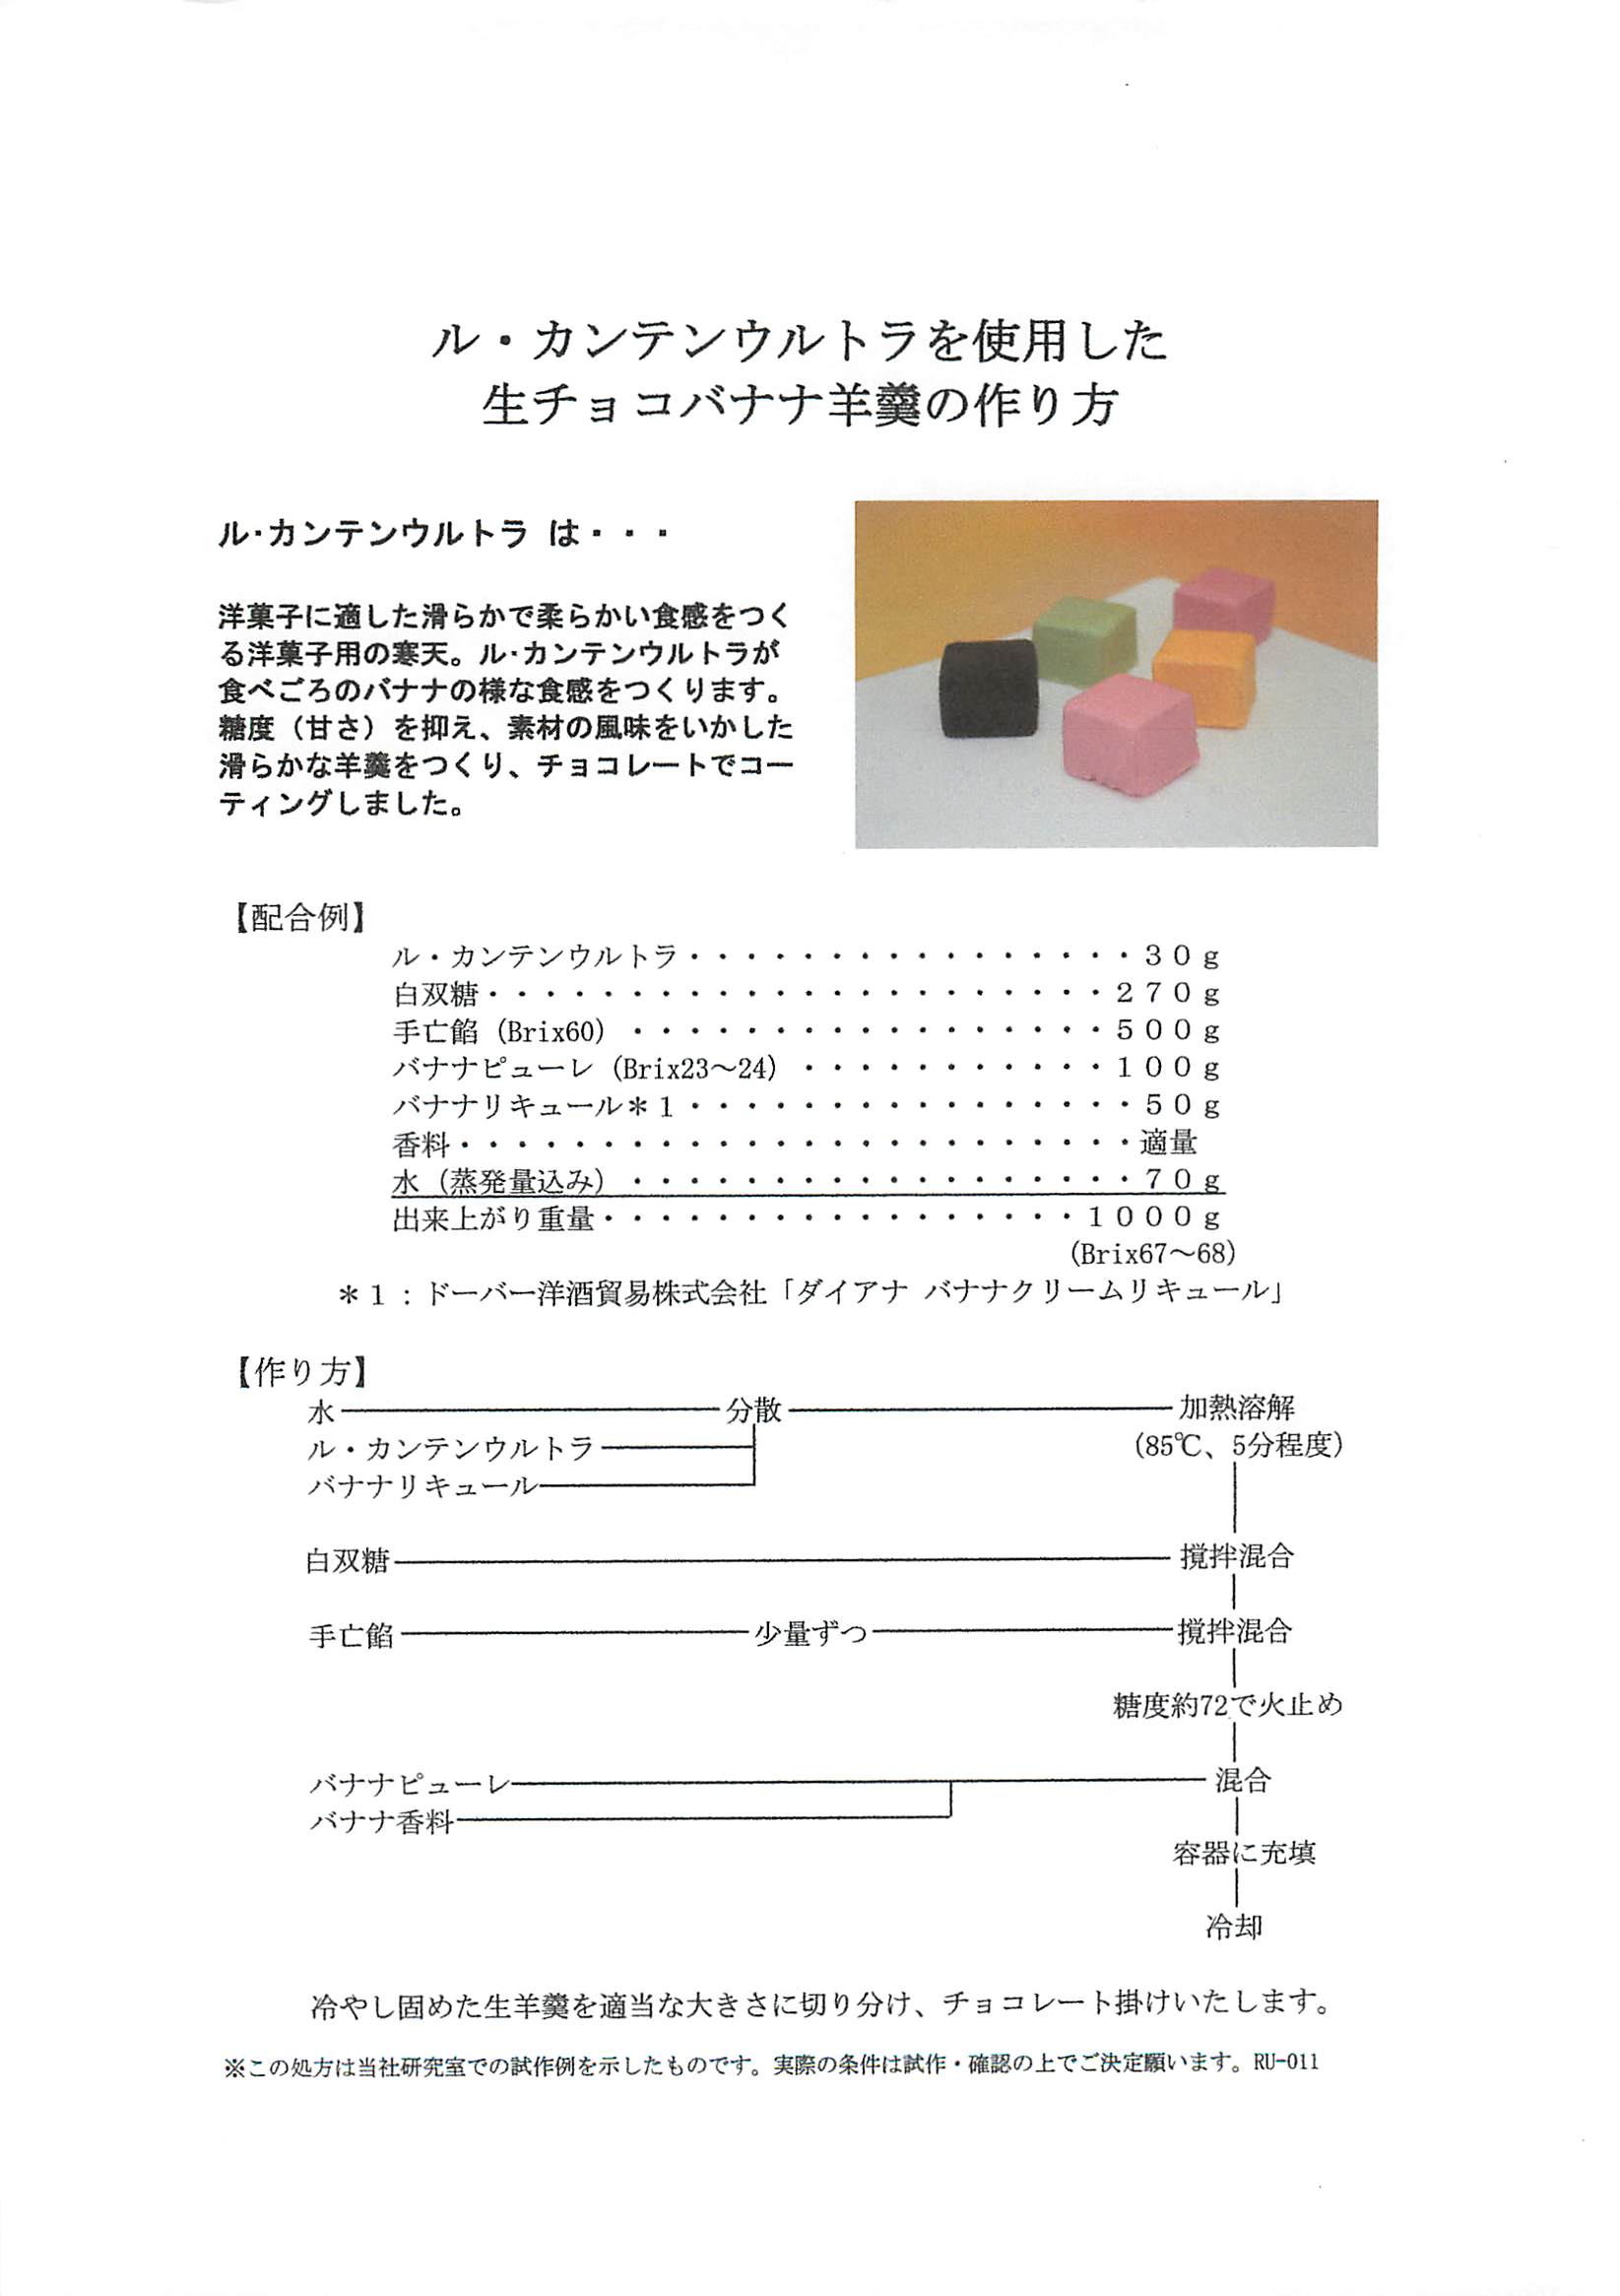 保護 ル・カンテンウルトラ レシピコレクション 9a1b2285 公式日本サイト -www.cfscr.com